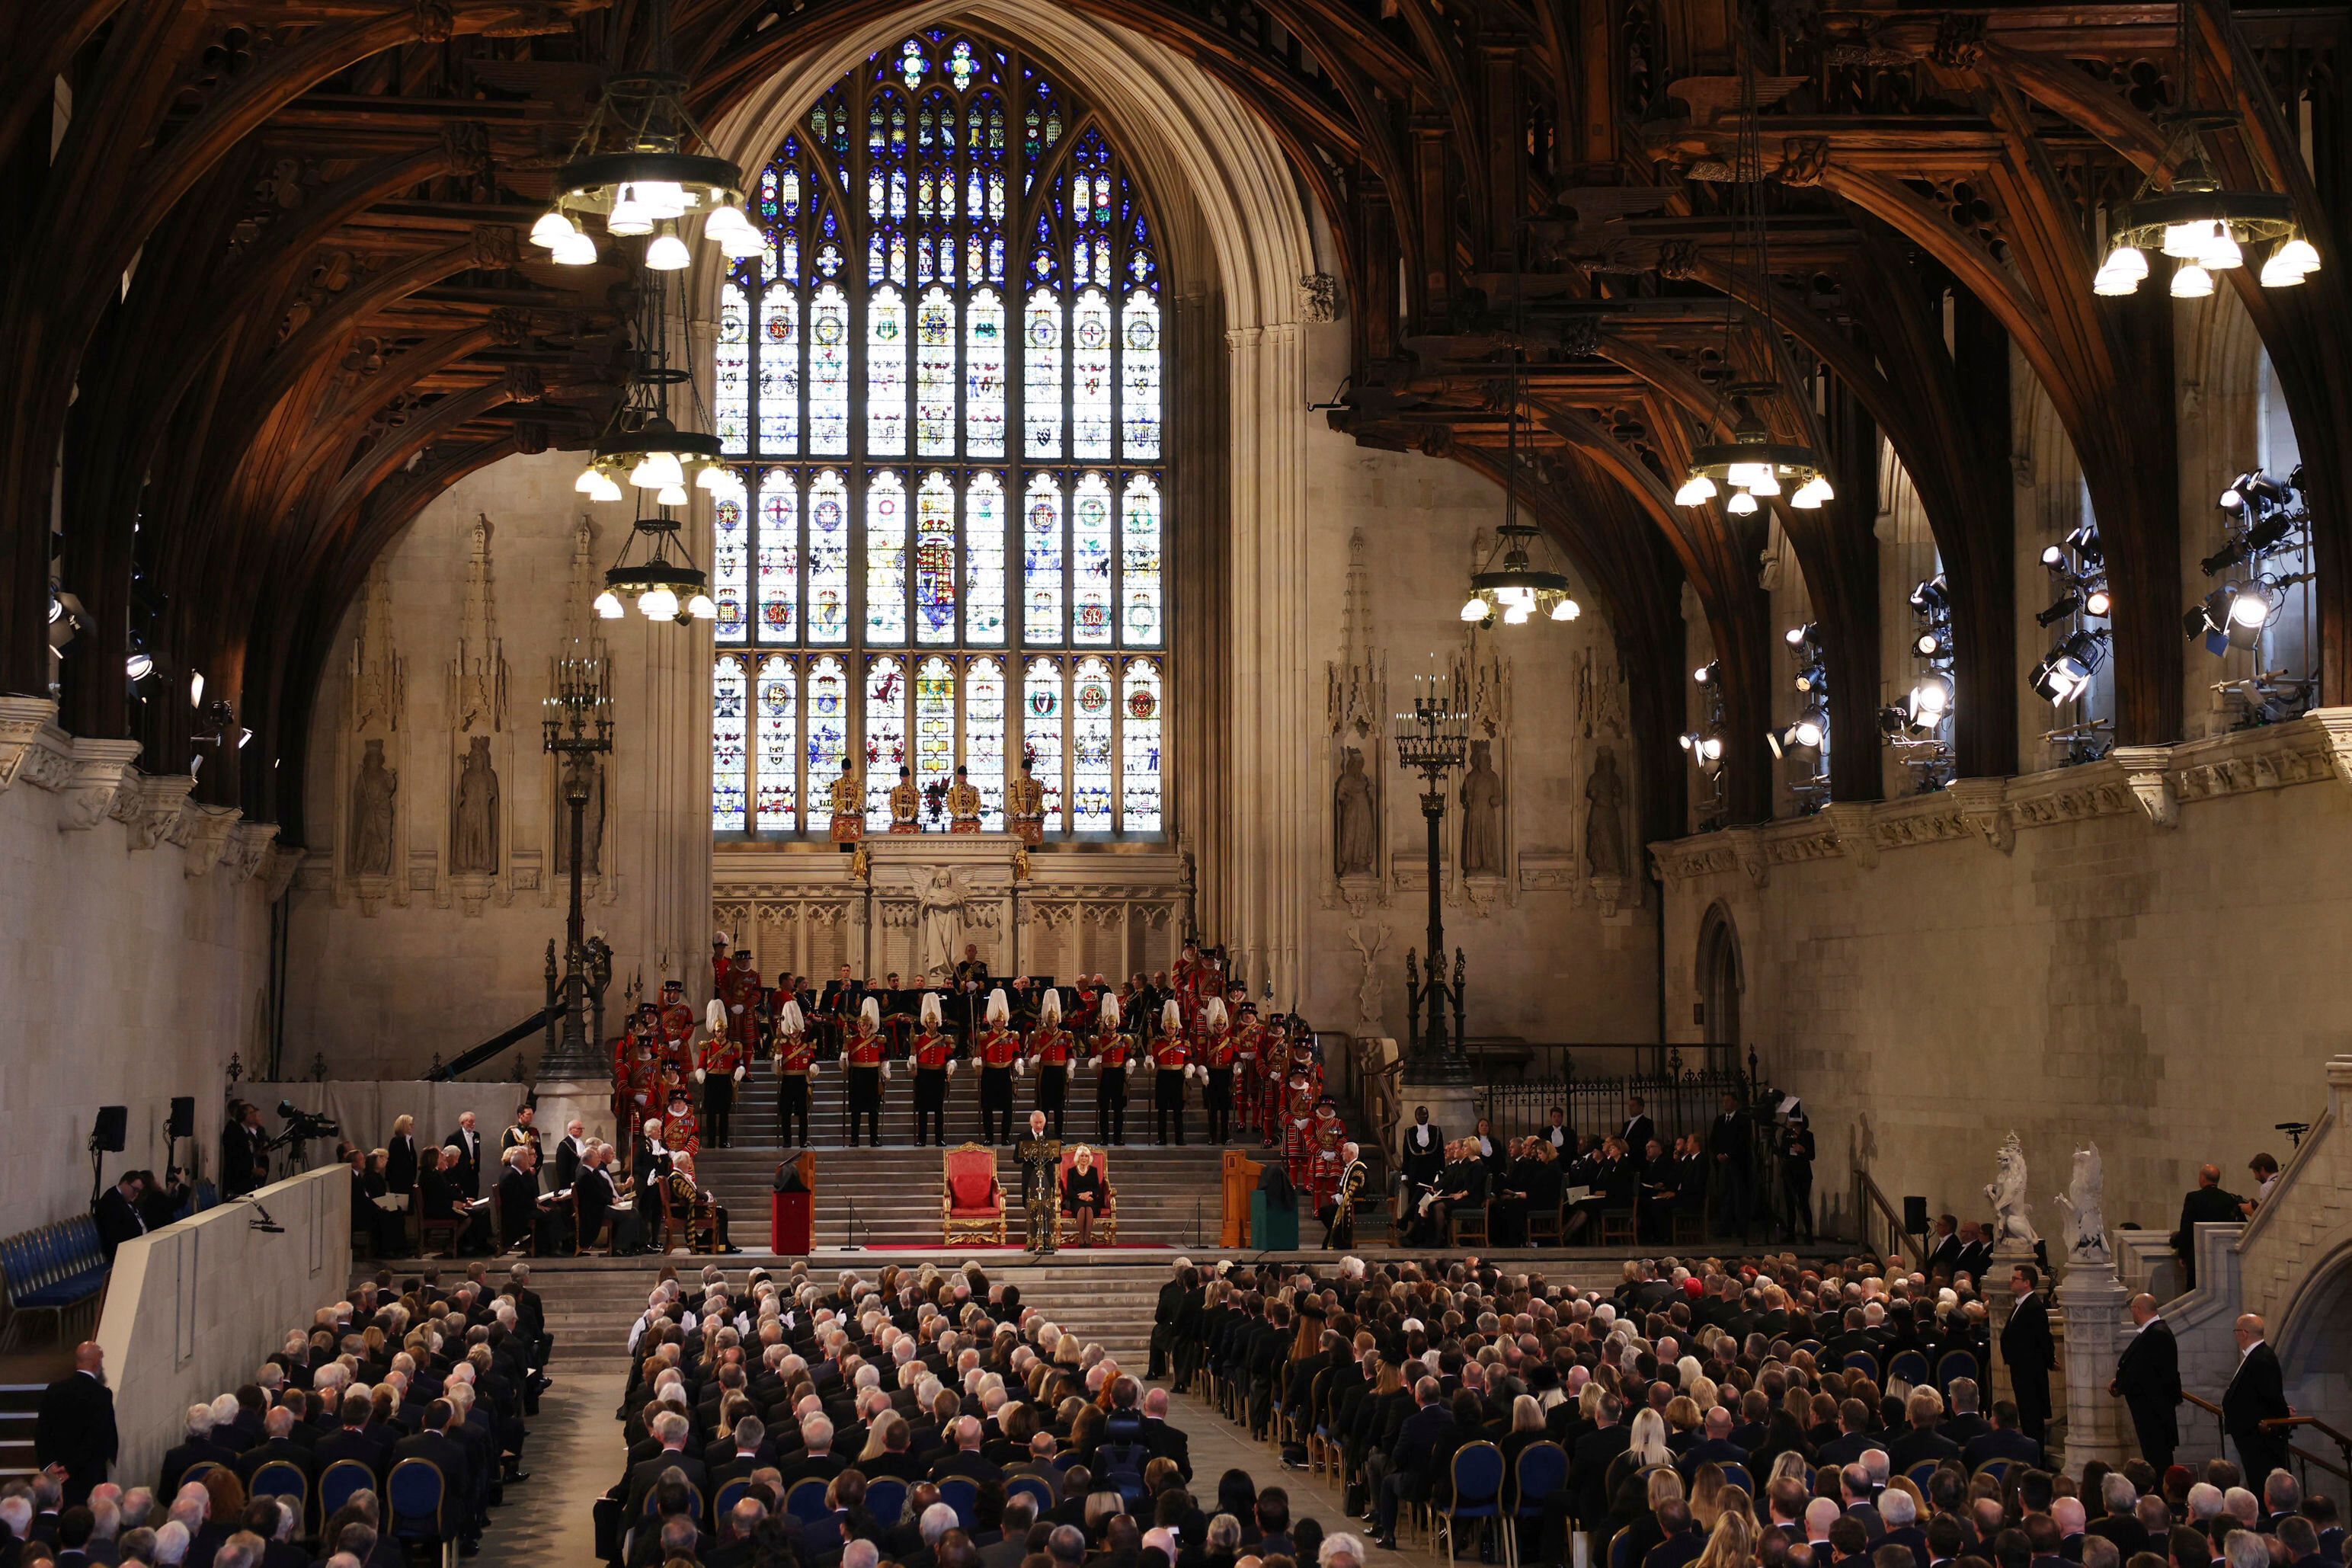 In der Westminster Hall hielt zuletzt King Charles III. seine erste Ansprache - und trauerte gemeinsam mit dem britischen Parlament um die verstorbene Queen Elizabeth II.